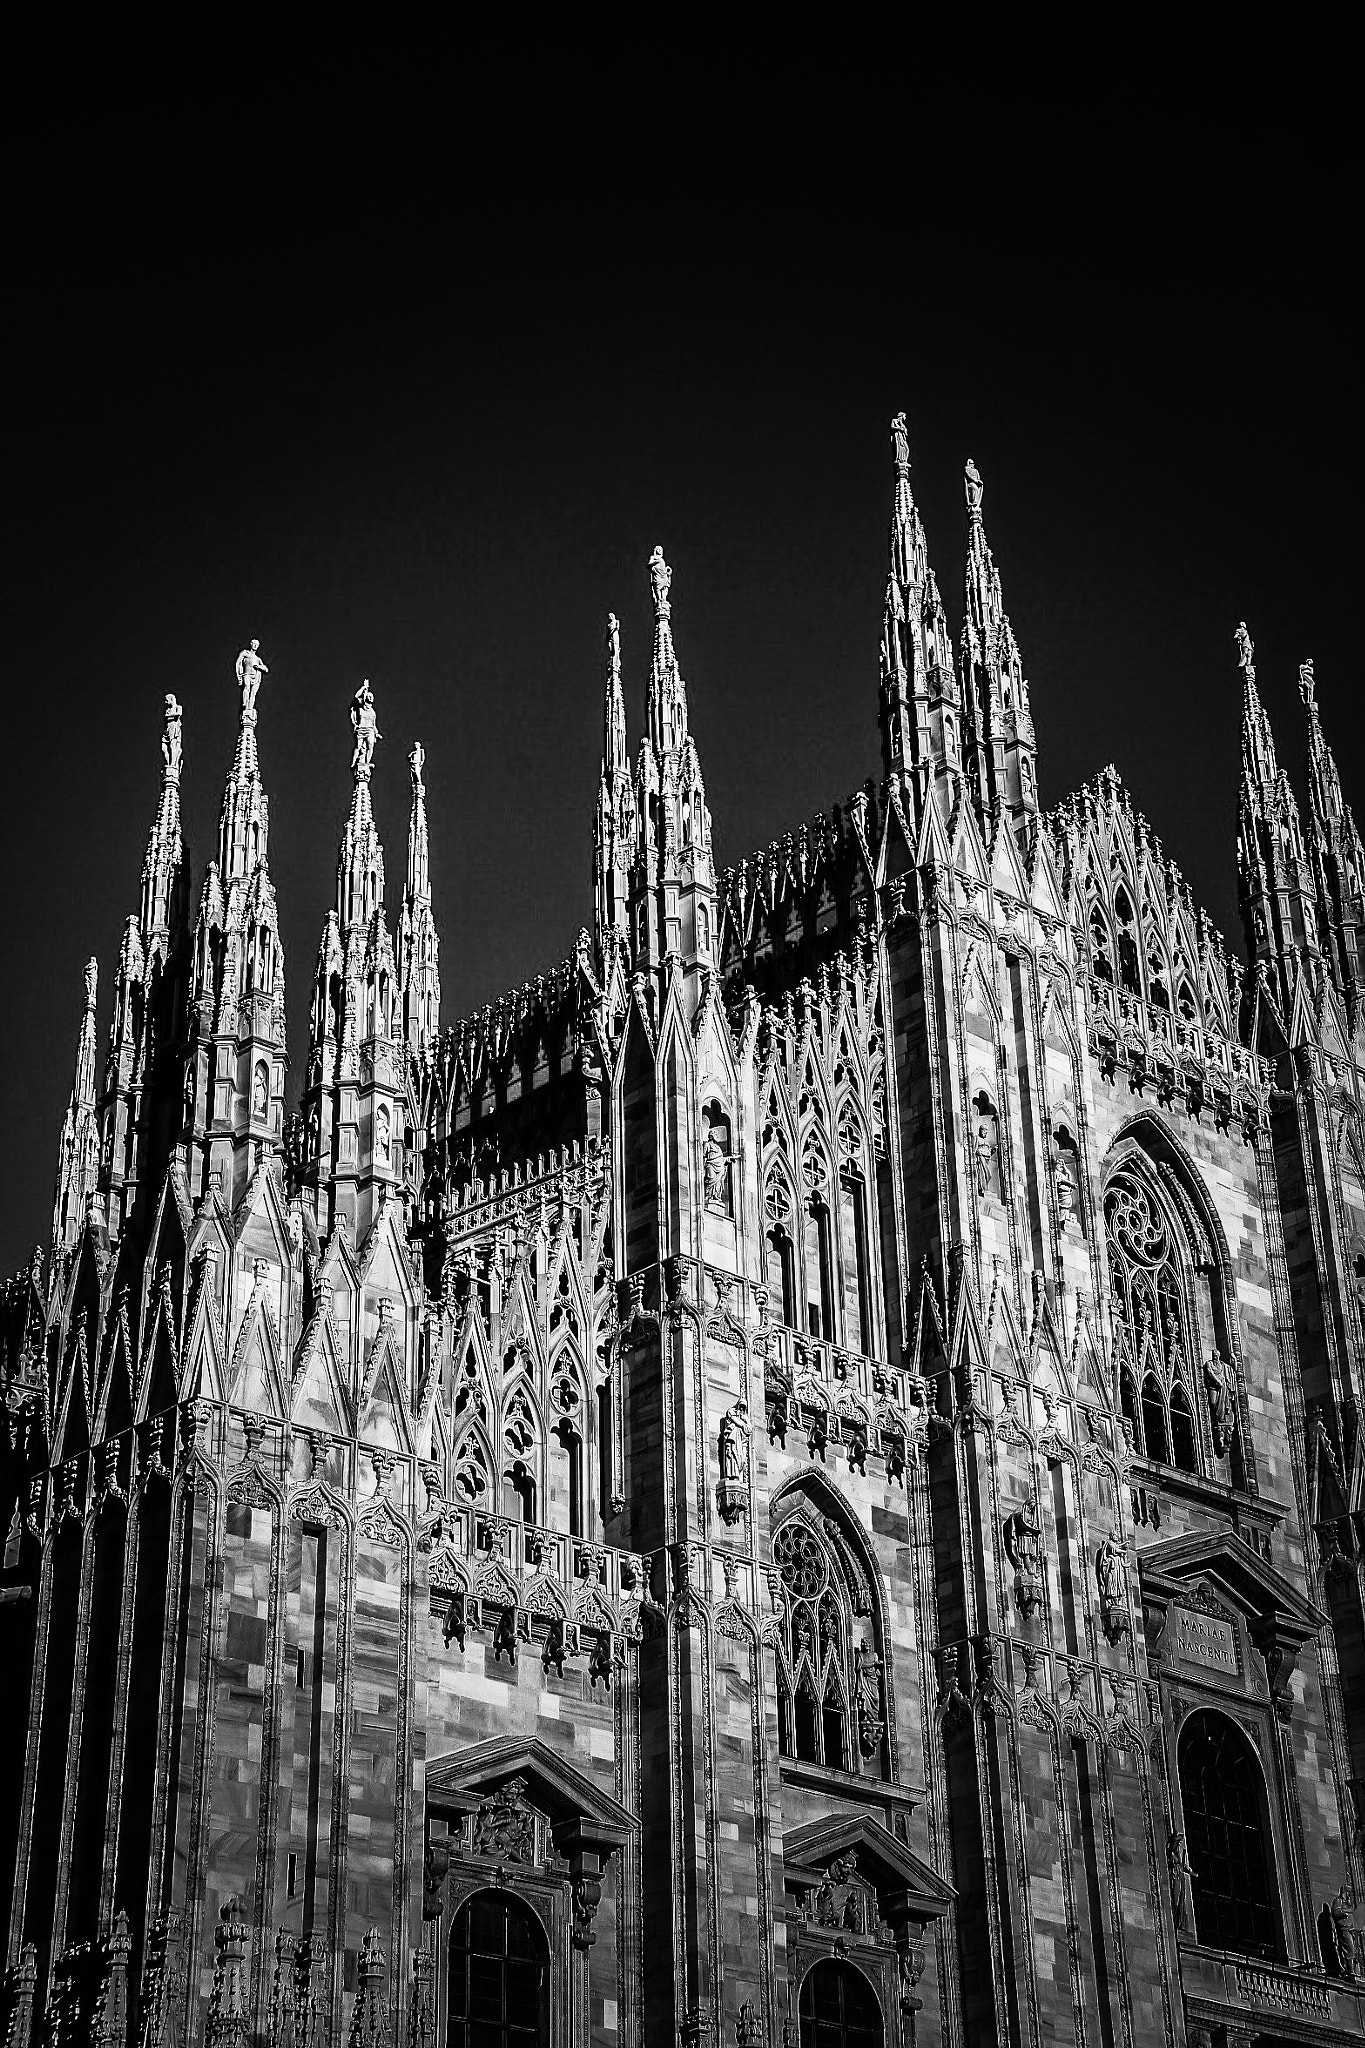 Canon EOS 50D + Canon 18-200mm sample photo. Duomo di milano photography